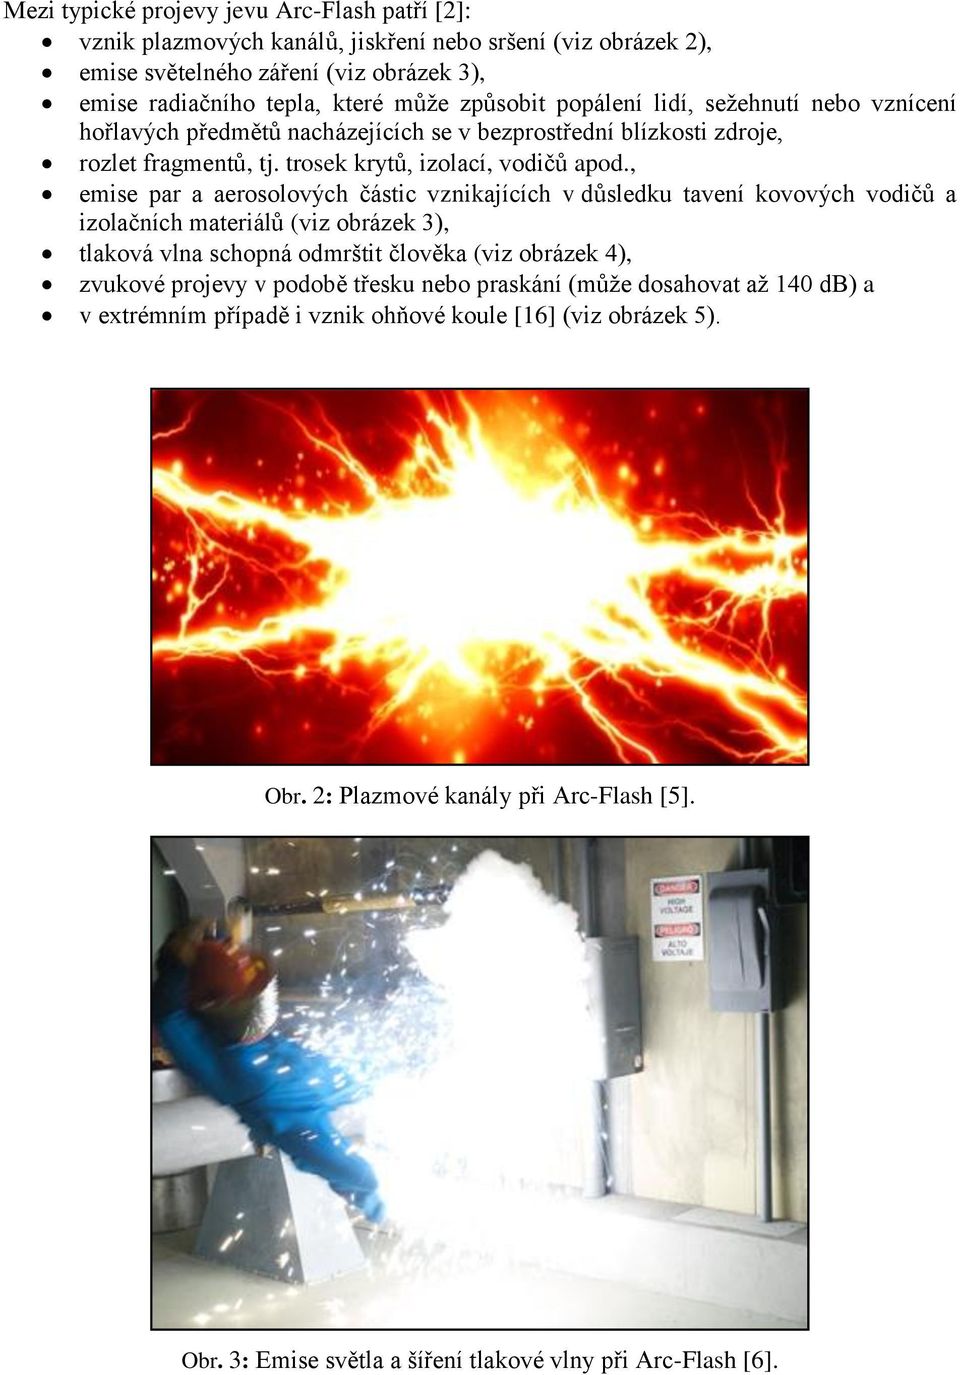 , emise par a aerosolových částic vznikajících v důsledku tavení kovových vodičů a izolačních materiálů (viz obrázek 3), tlaková vlna schopná odmrštit člověka (viz obrázek 4), zvukové projevy v